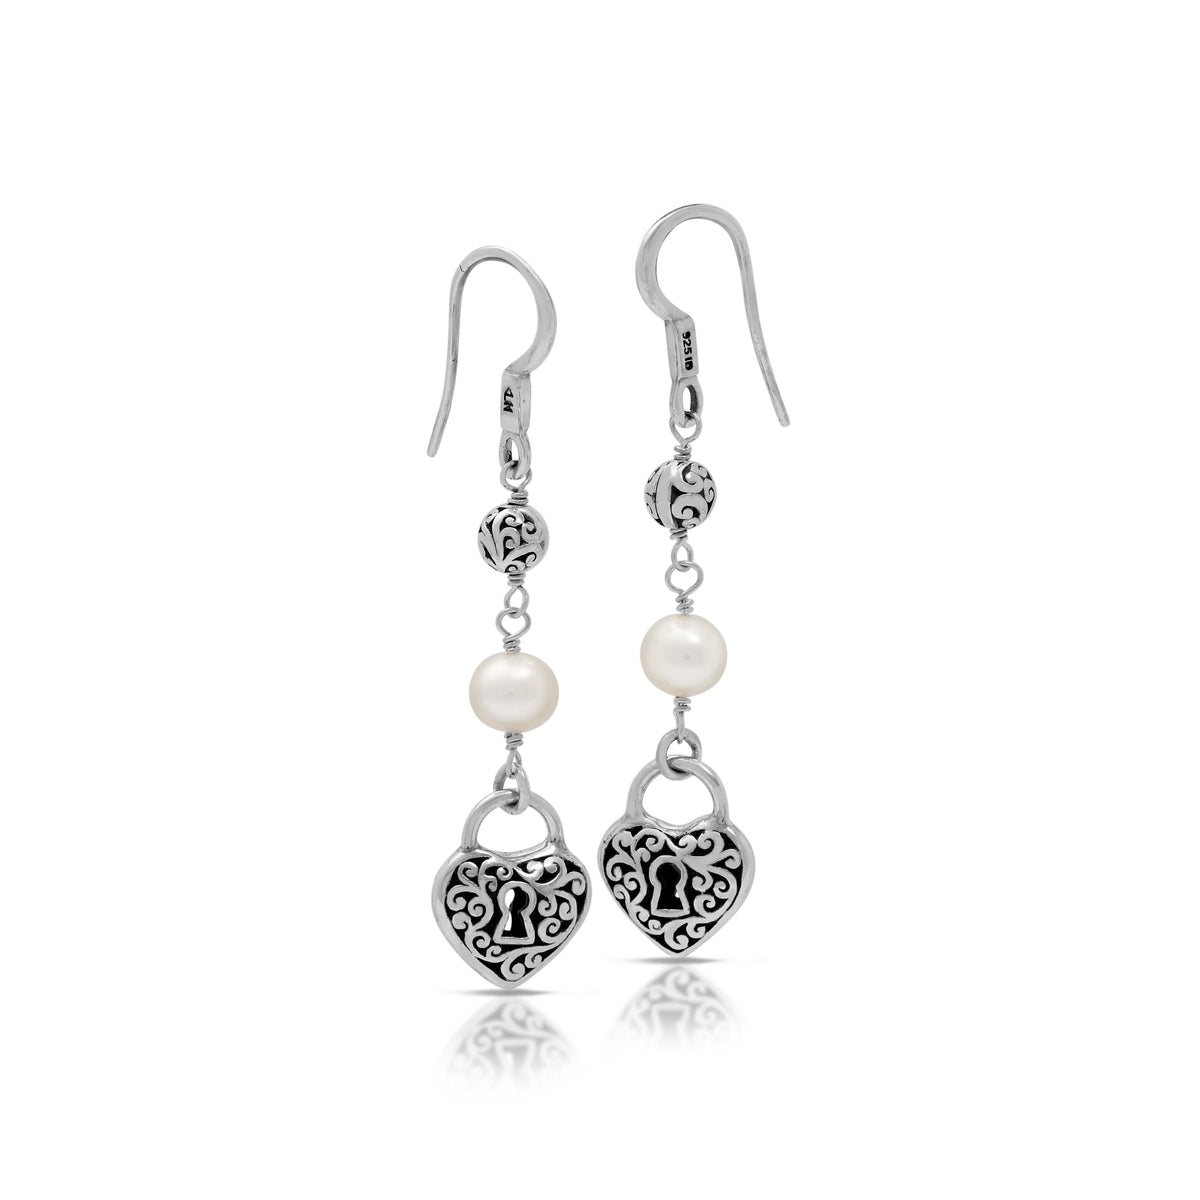 White Pearl & LH Scroll Beads Heart Drop Earrings (37mm)